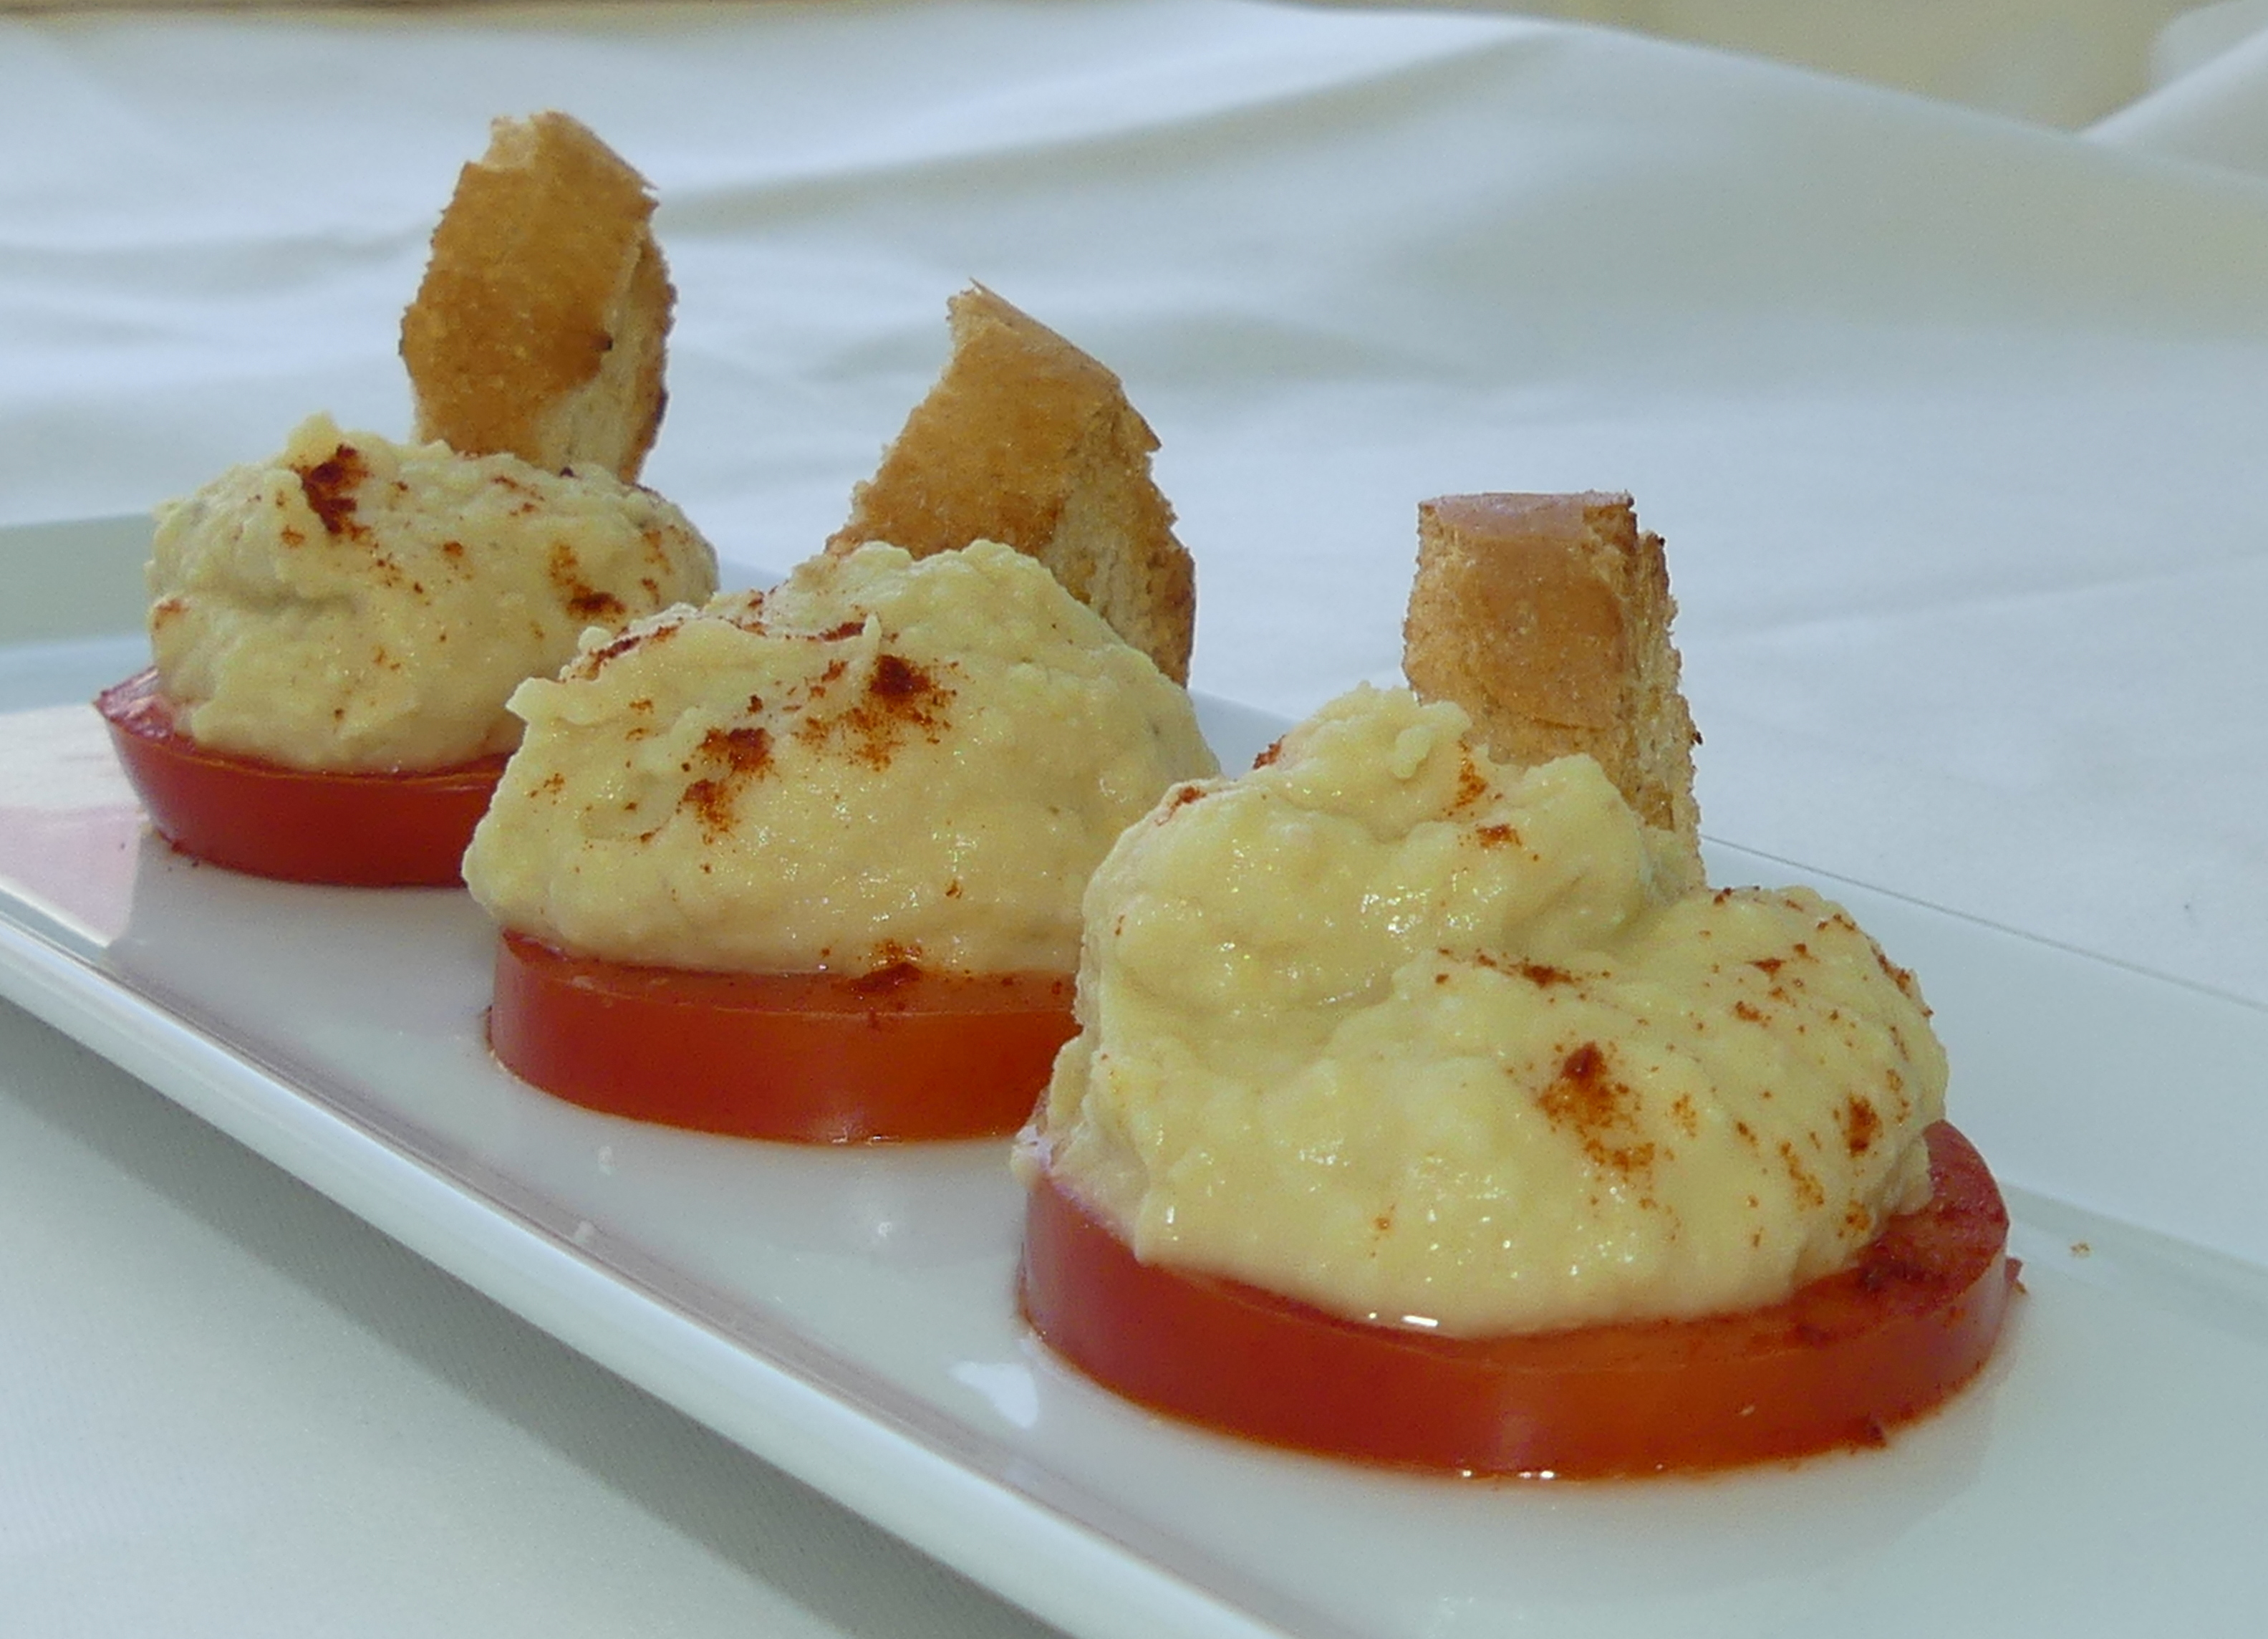 Garbanzos - Gastronomía Vasca: Escuela de Hostelería Leioa